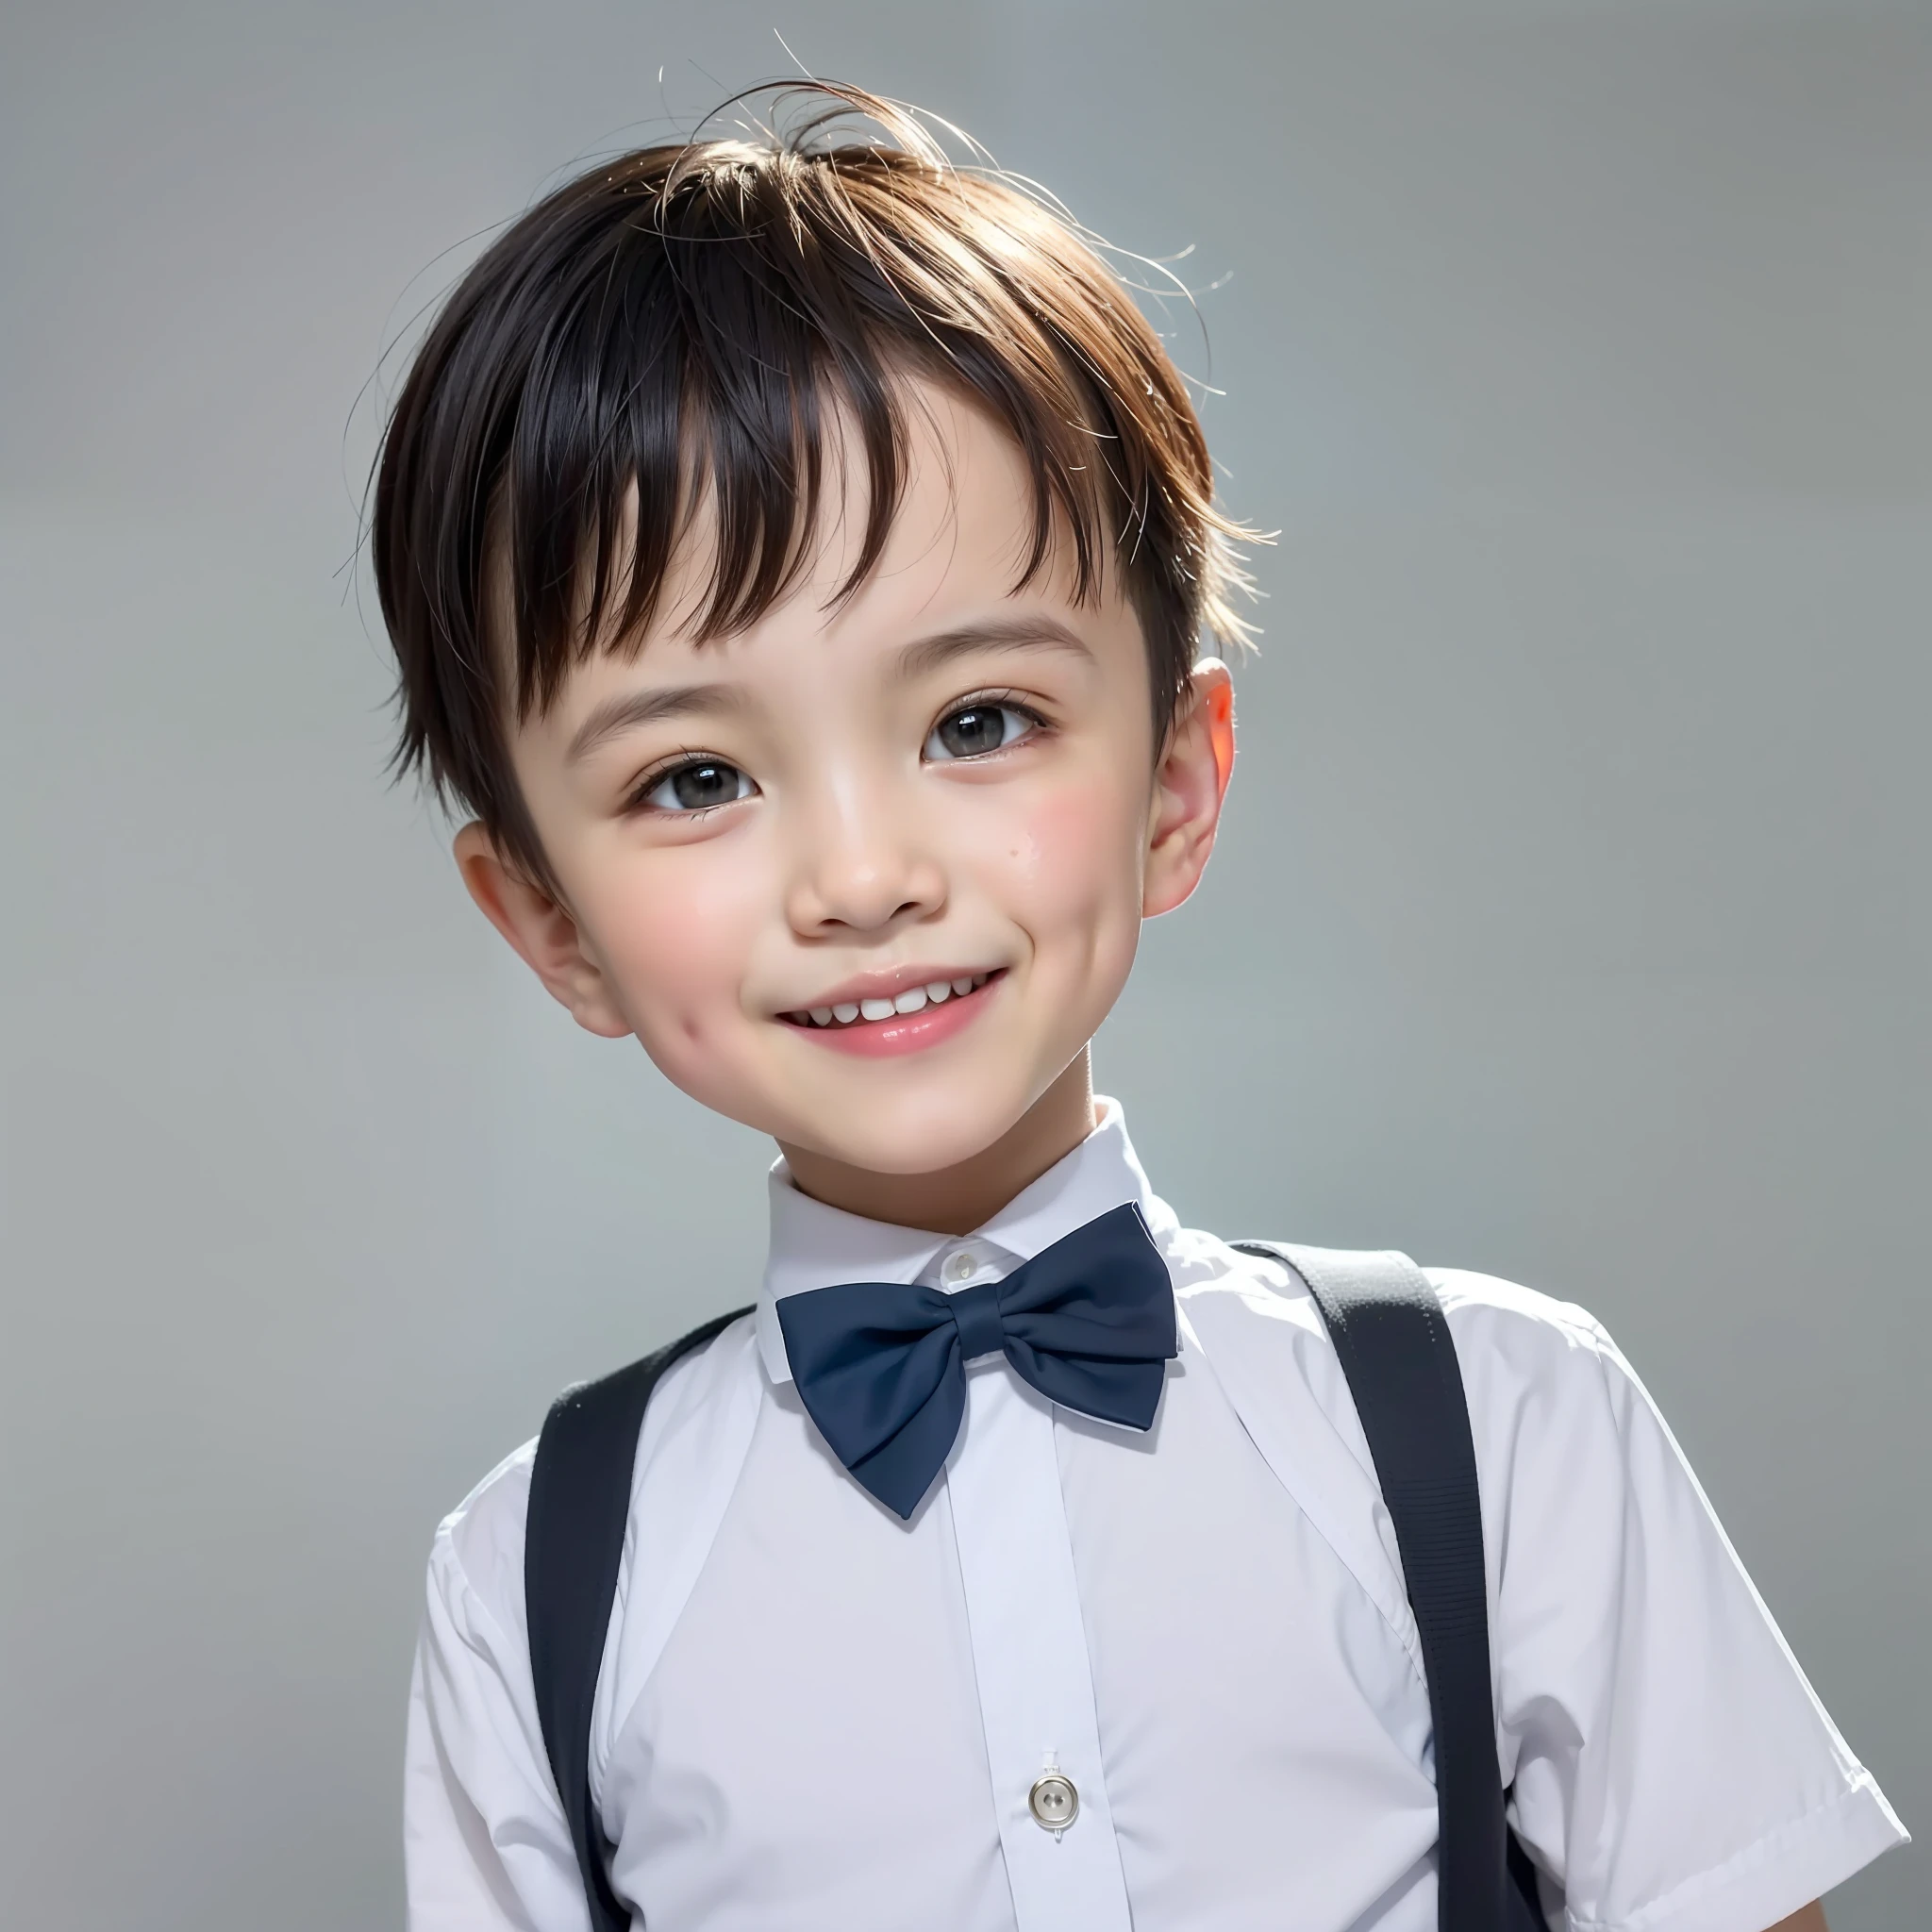 estilo moderno, fundo branco, Foto de identificação de criança chinesa, bonito, menino sorridente, olhos pretos, cabeça plana, gravata borboleta